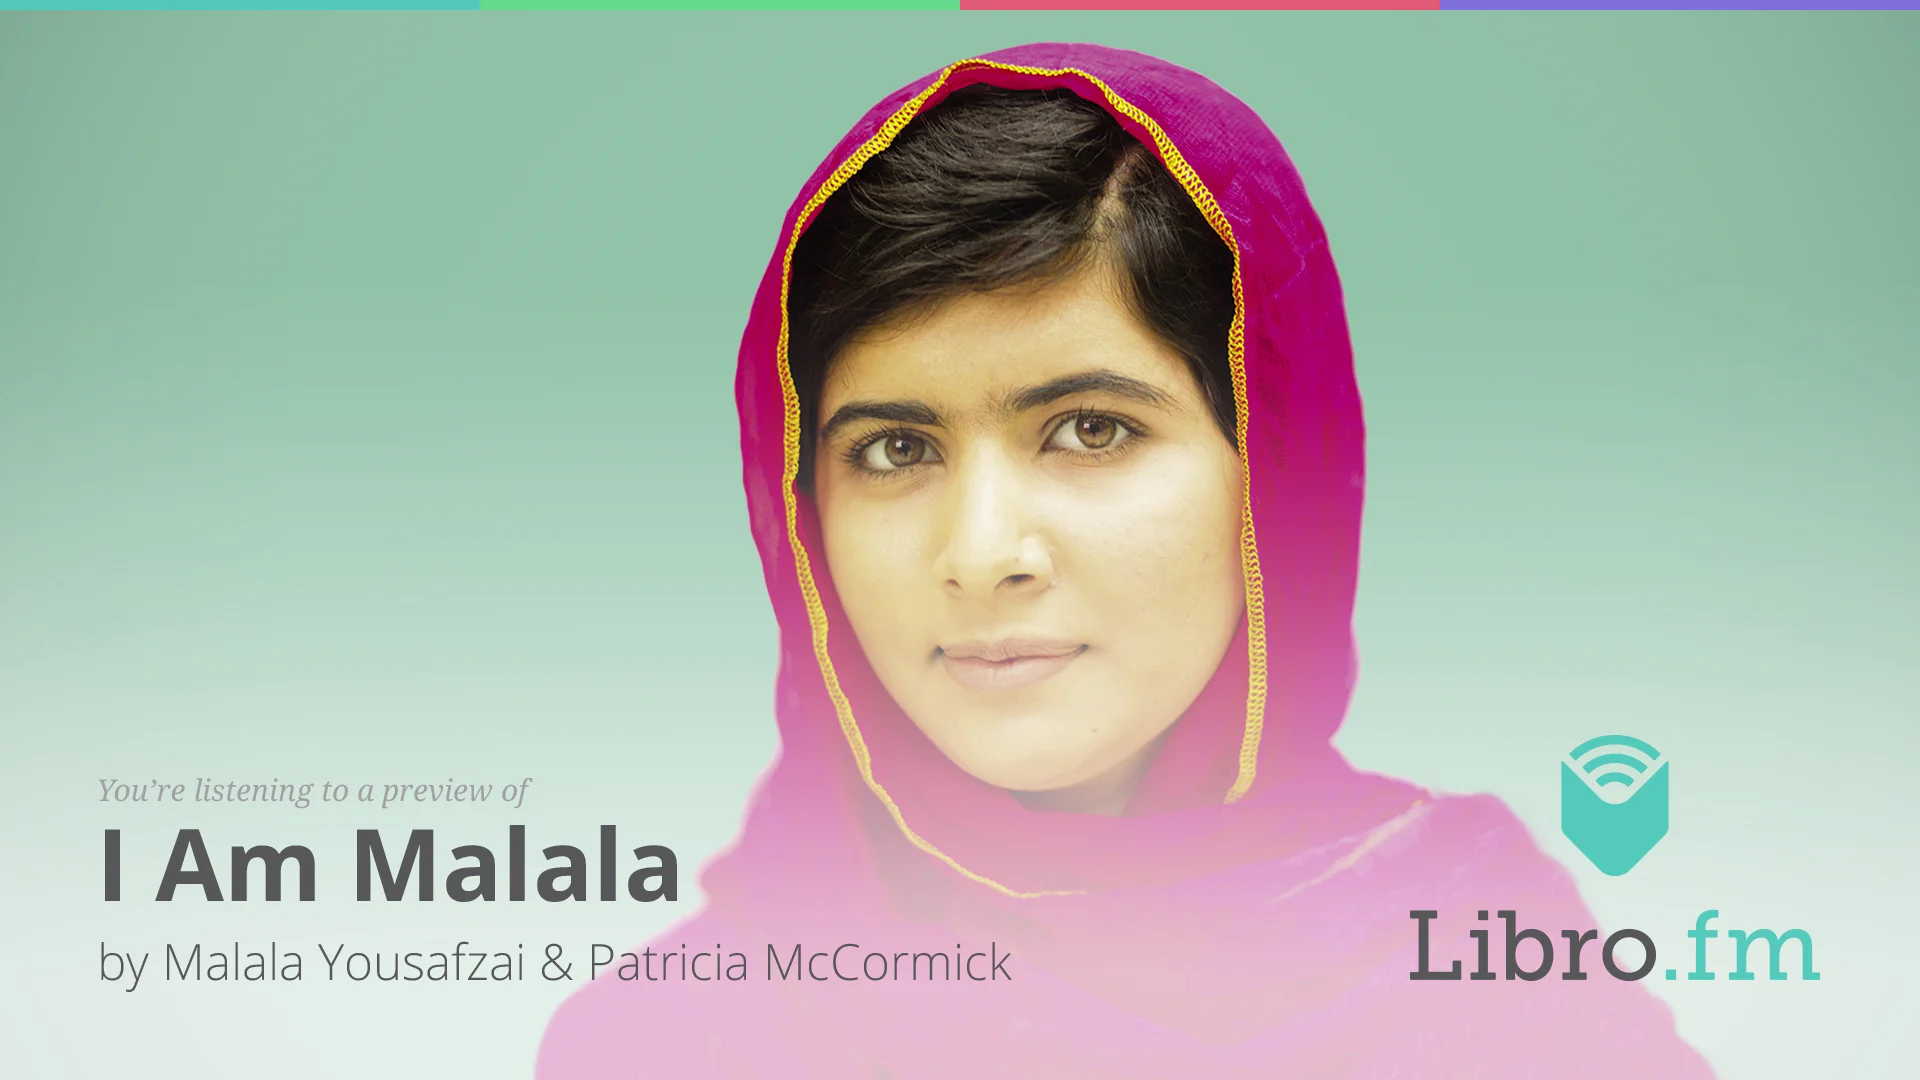 I Am Malala by Malala Yousafzai and Christina Lamb on Vimeo